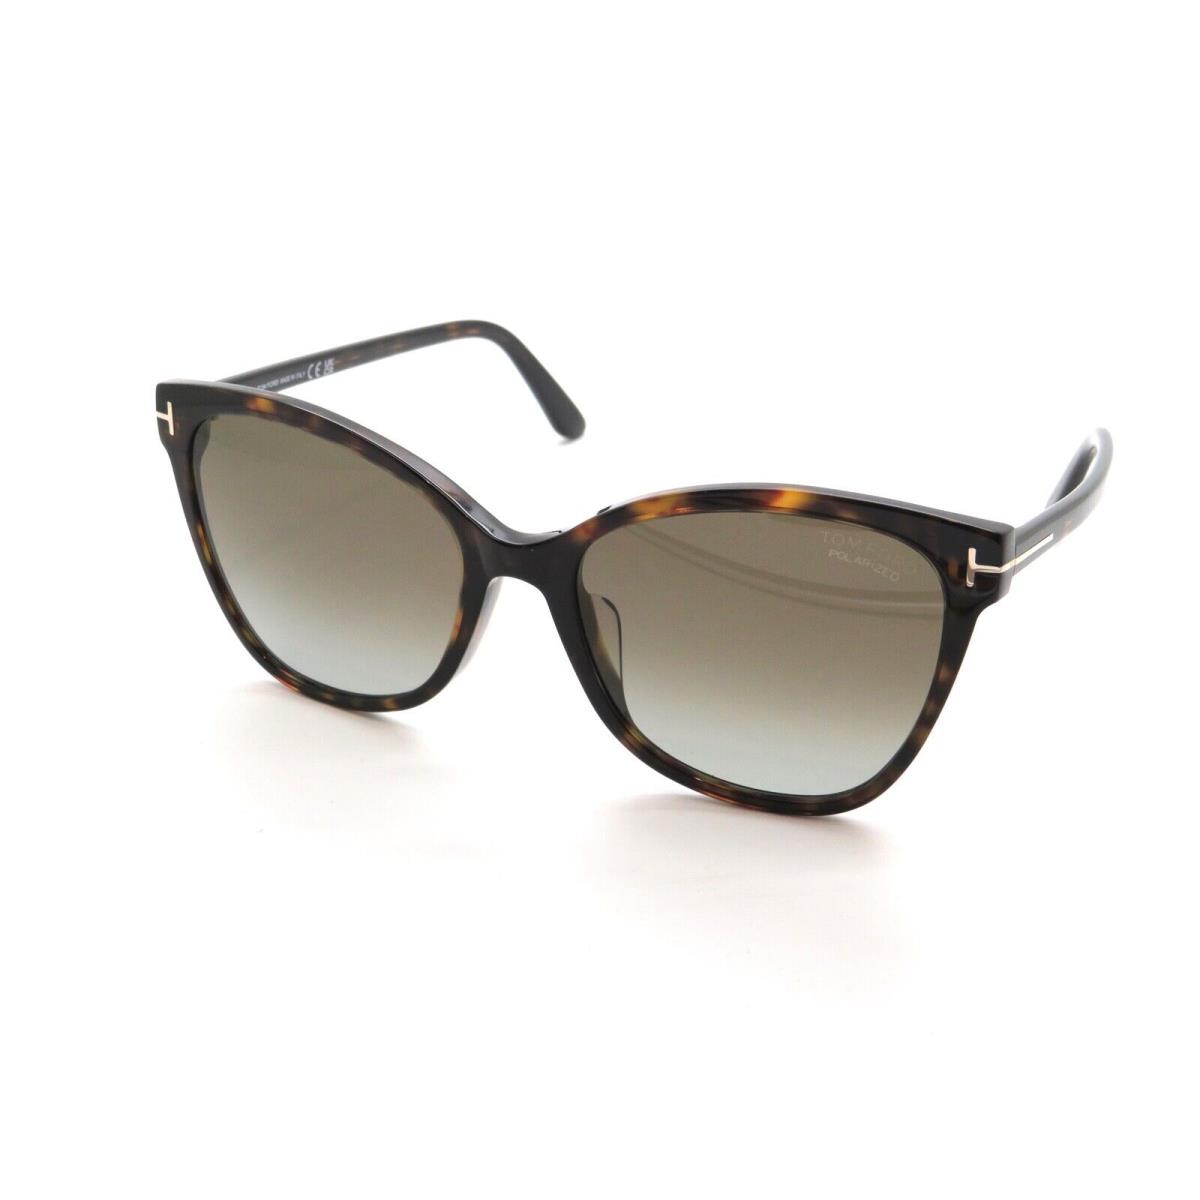 Tom Ford sunglasses Ani - Havana Tortoise Frame, Brown Gradient Lens 0